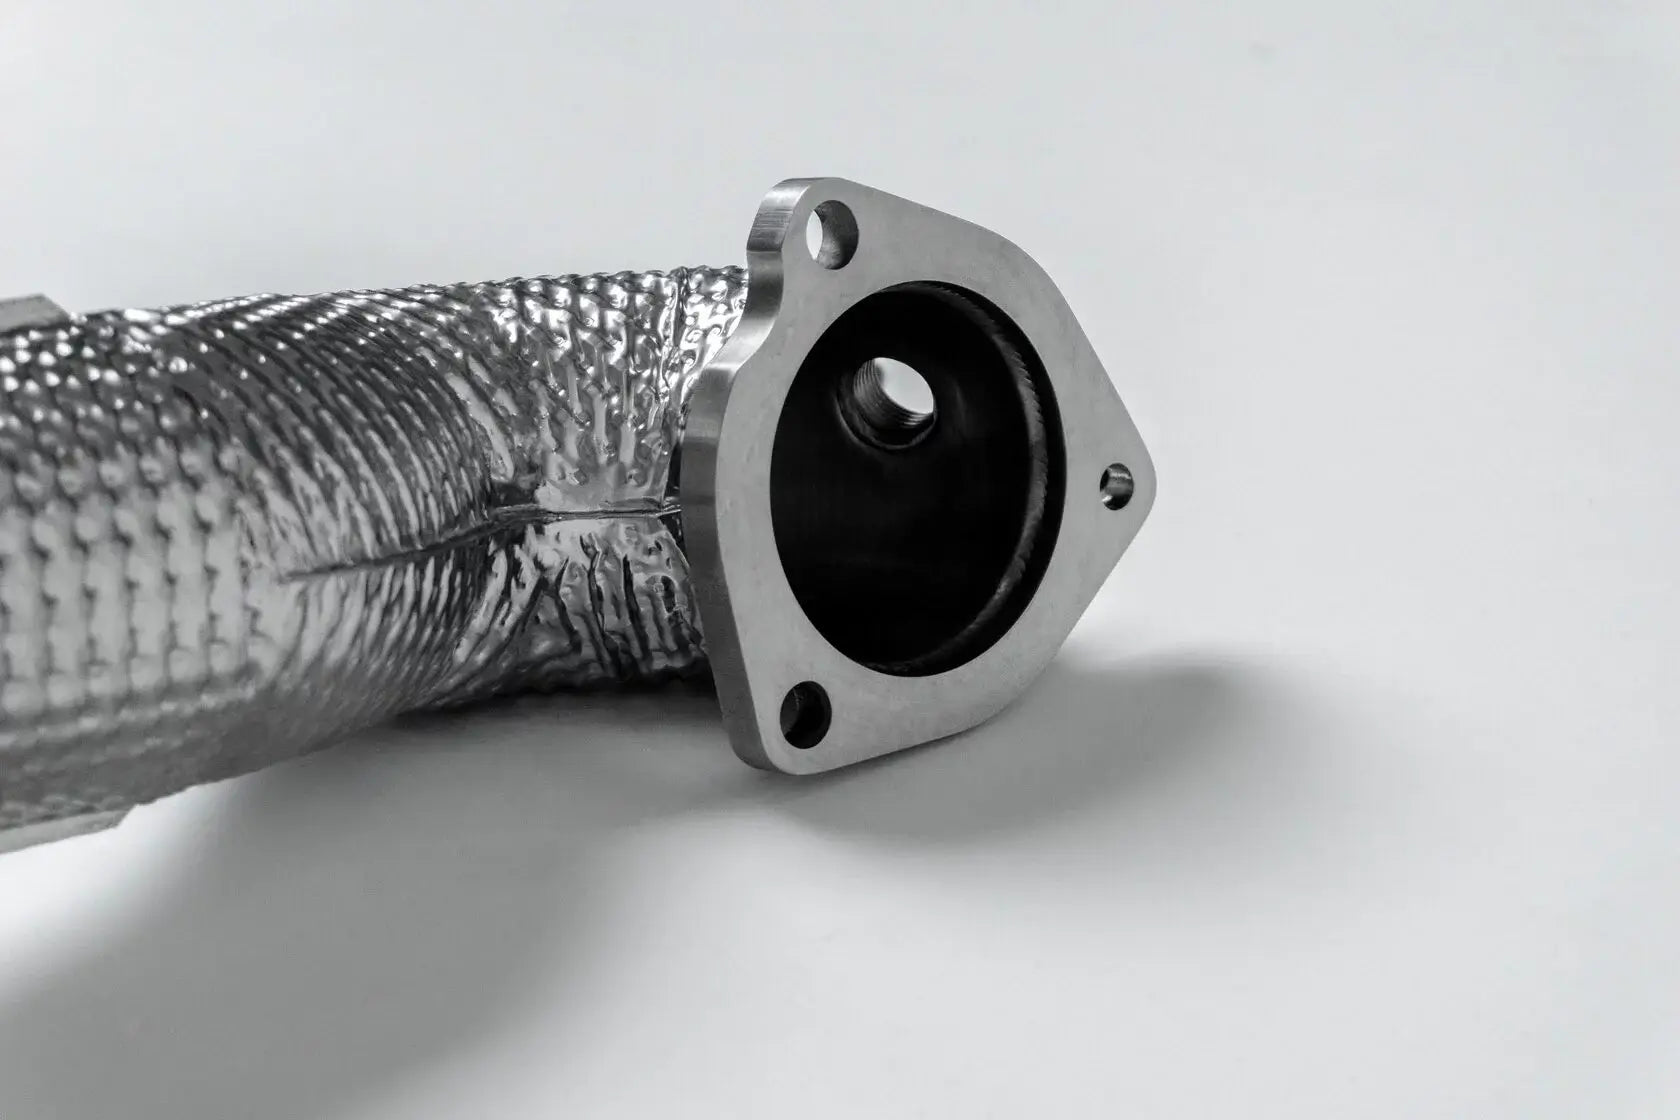 DEIKIN 10-MINI.COOPER.S.R56-DPT Downpipe for MINI Cooper S (R56) with thermal insulation HeatShield Photo-3 